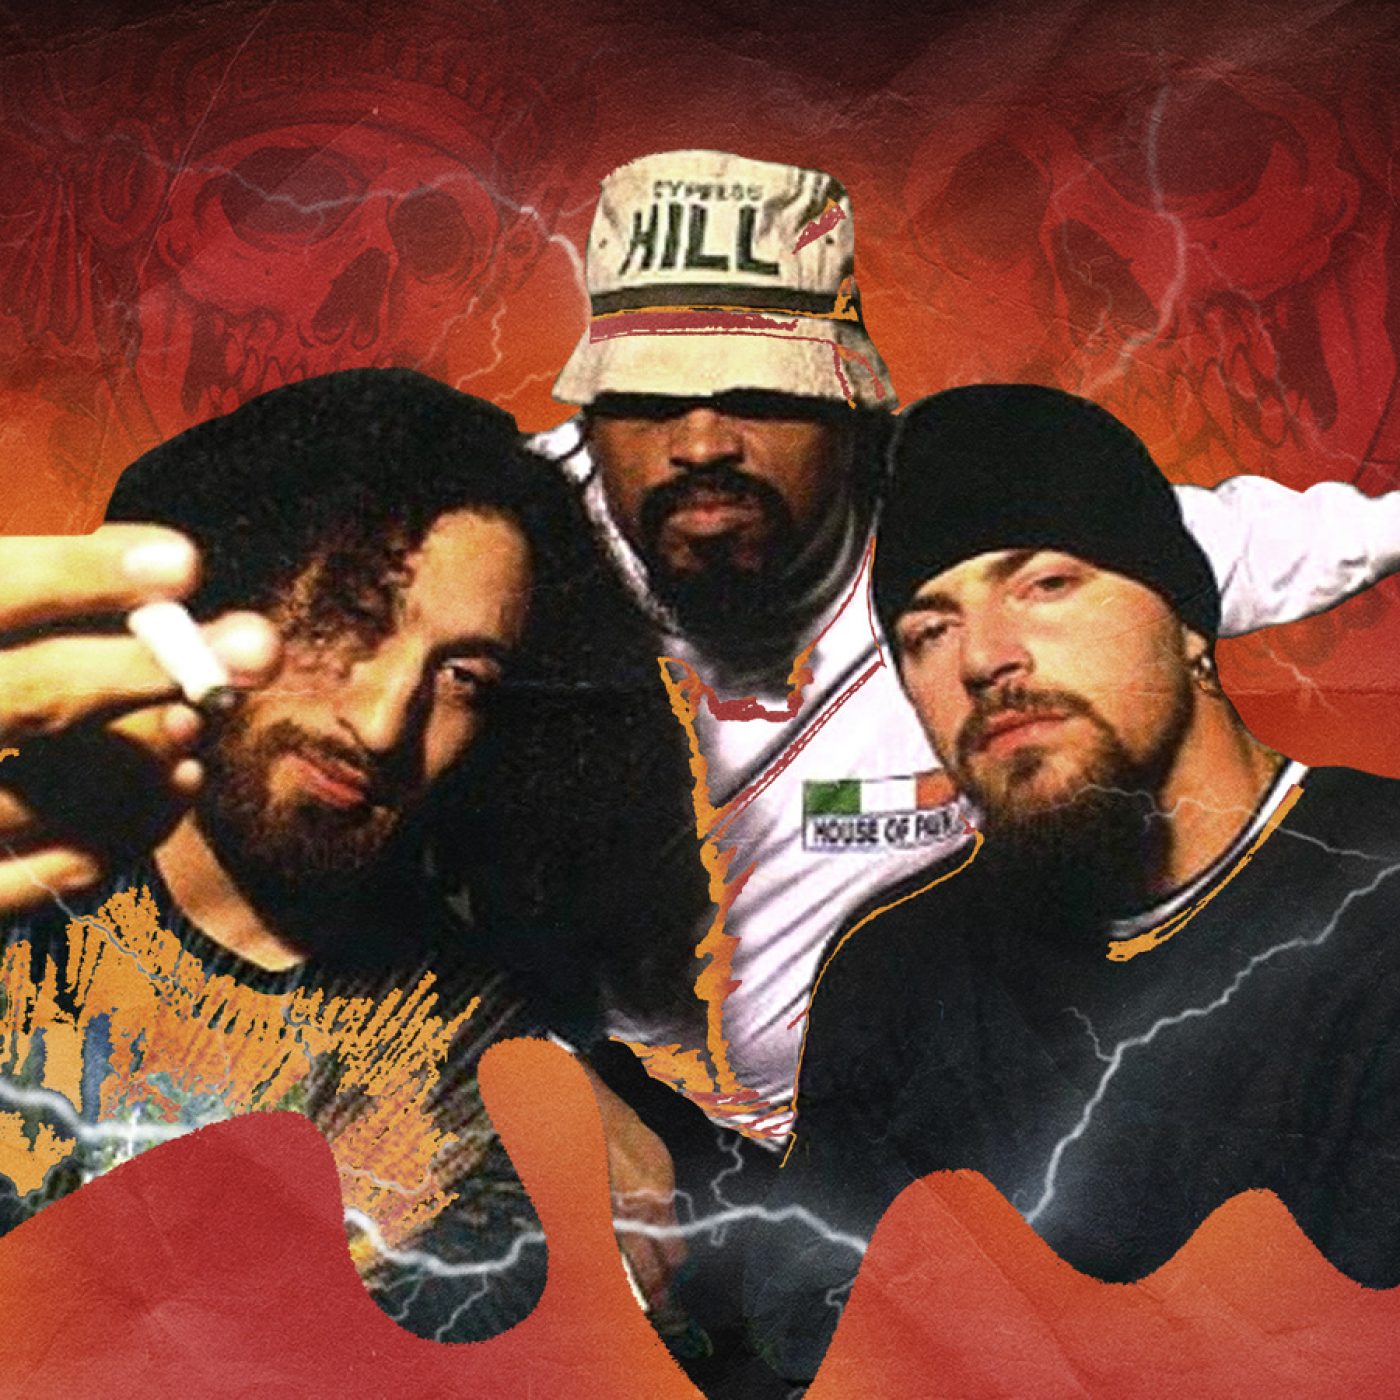 cypress hill los grandes Éxitos en español influence on latin hip hop